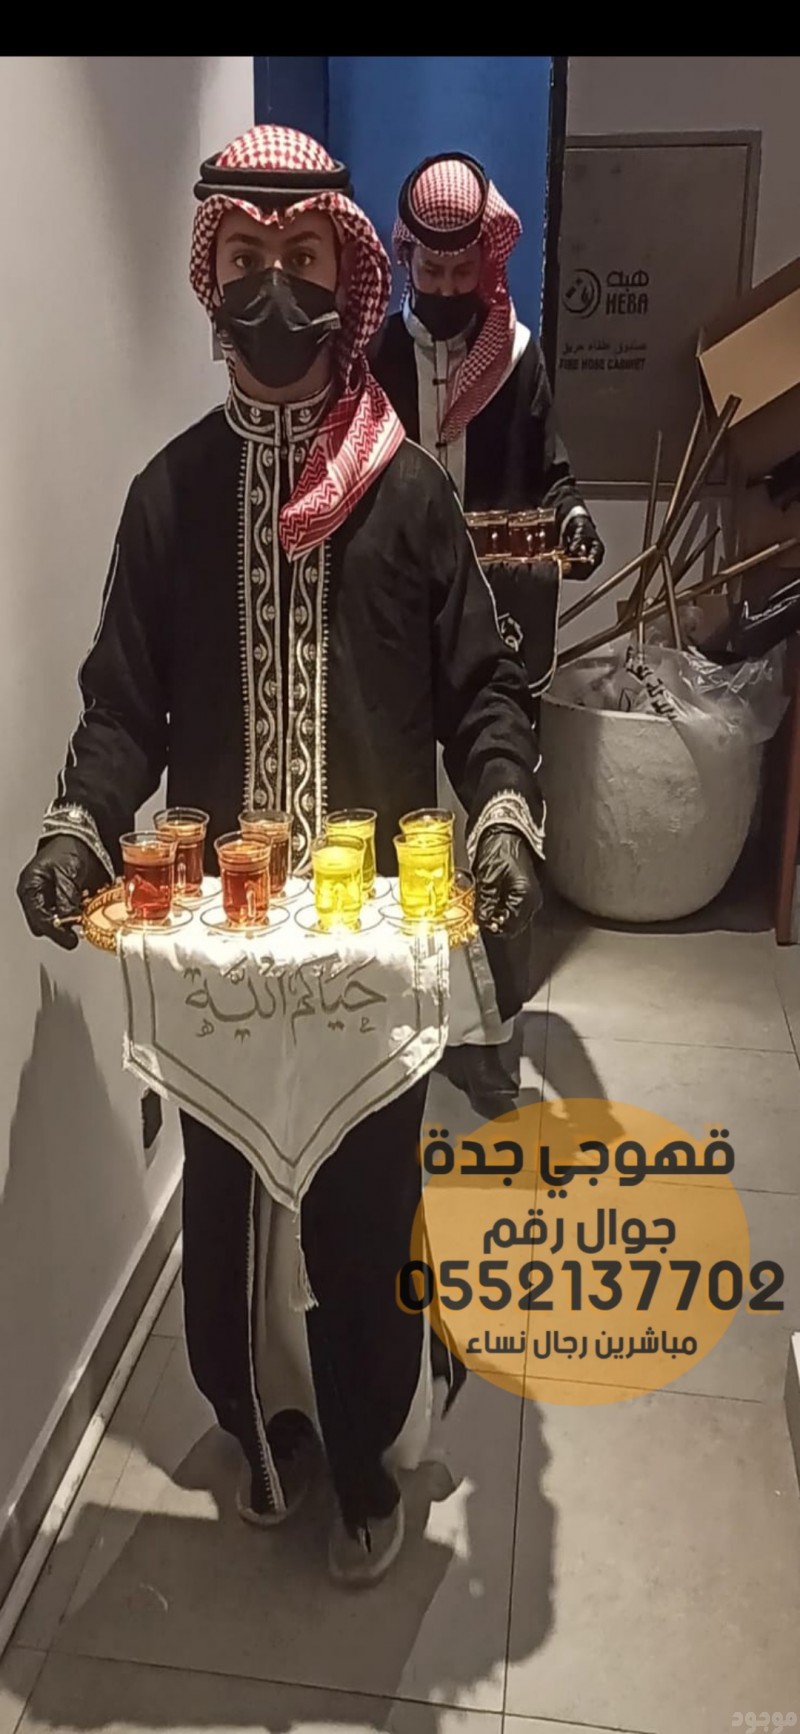   قهوجيين وصبابين في جدة بافضل سعر 0552137702